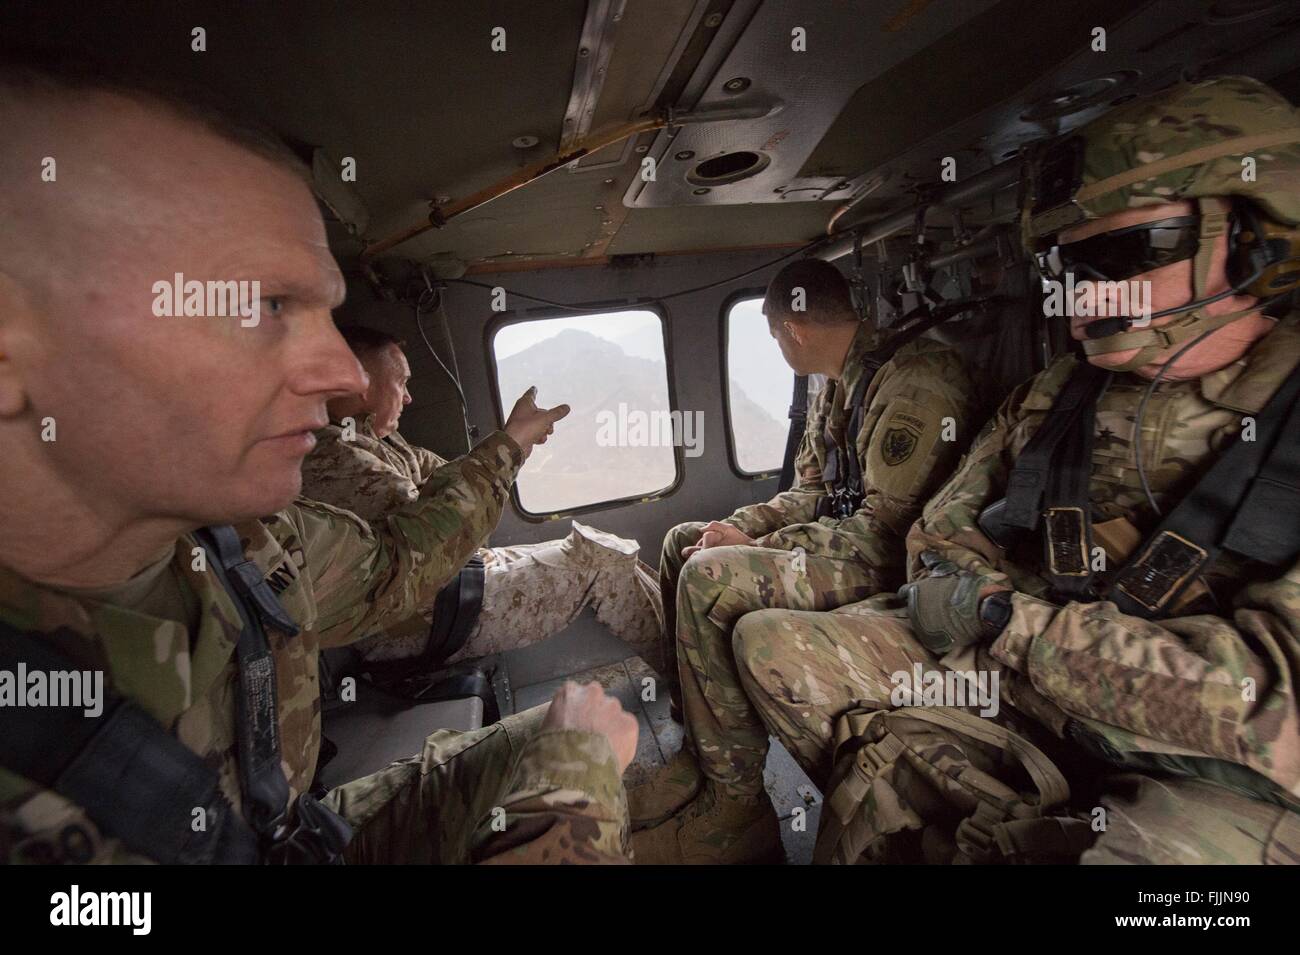 US Joint Chiefs Chairman General Joseph Dunford sieht aus dem Fenster von einem UH-60 Black Hawk Hubschrauber zusammen mit Command Sergeant Major John W. Troxell und Major General Michael Howard: fliegen sie auf Forward Operating Base Fenty 2. März 2016 in Jalalabad, Afghanistan. Dunford ist für die Änderung der Befehl der US-Streitkräfte in Afghanistan. Stockfoto